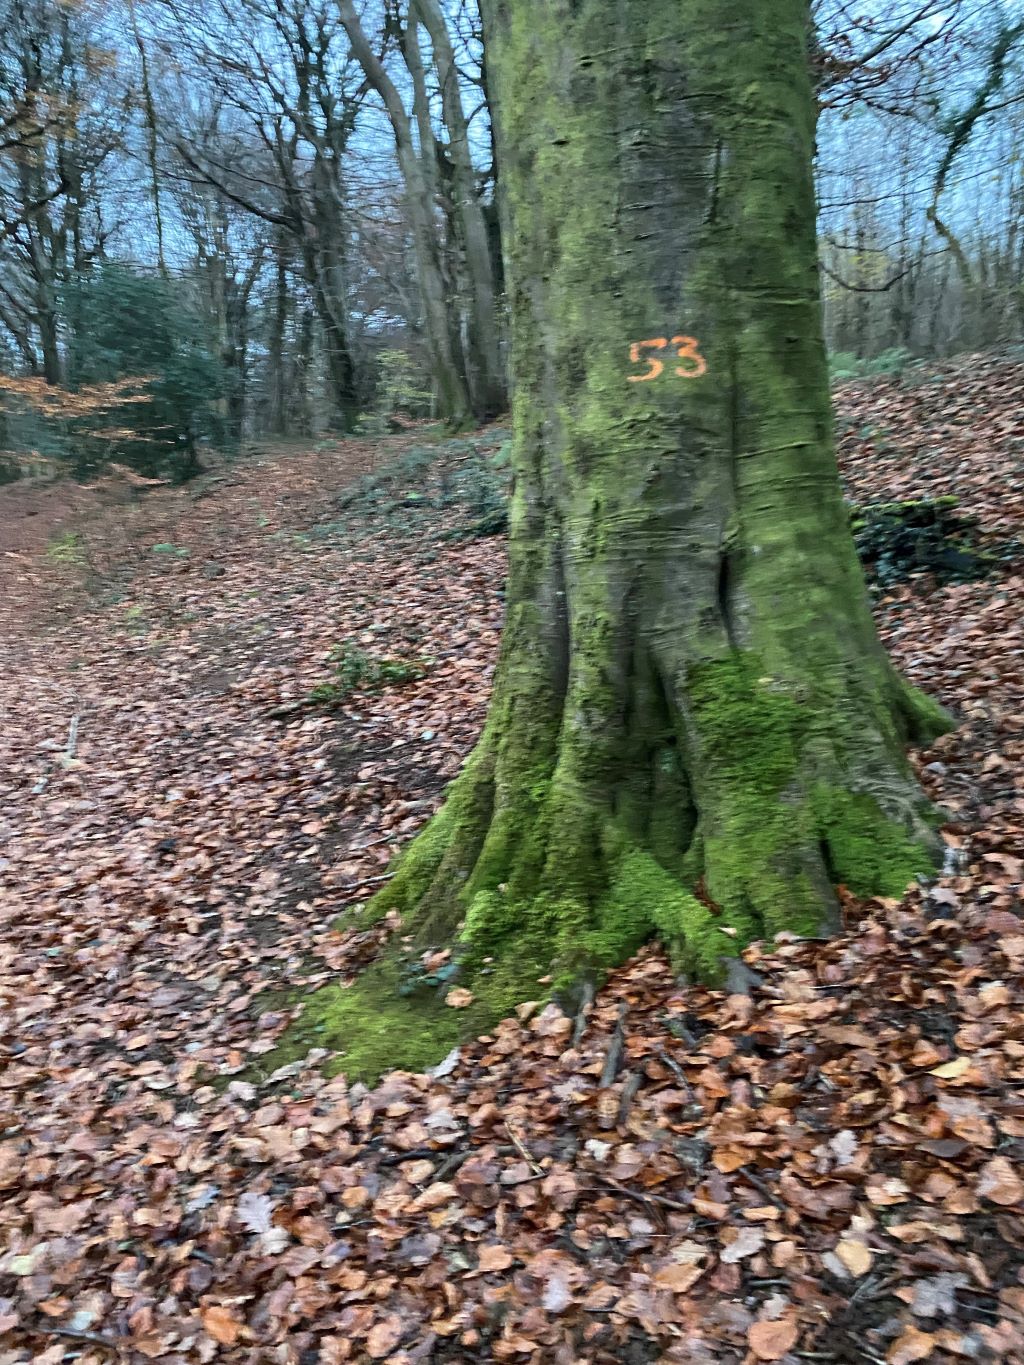 number on tree